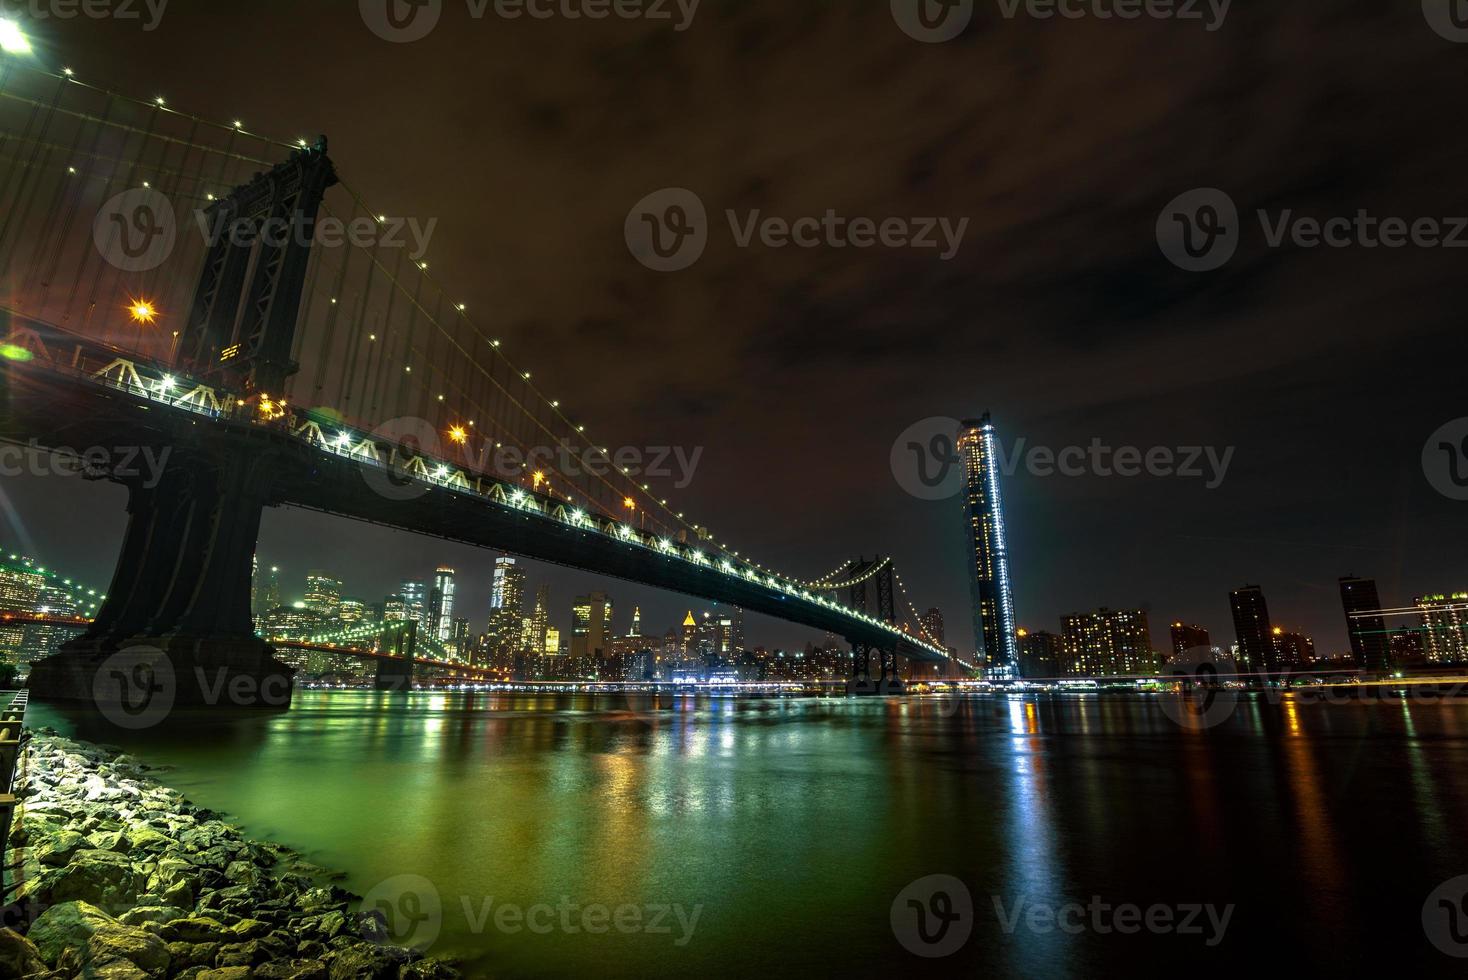 Manhattan Bridge di notte foto